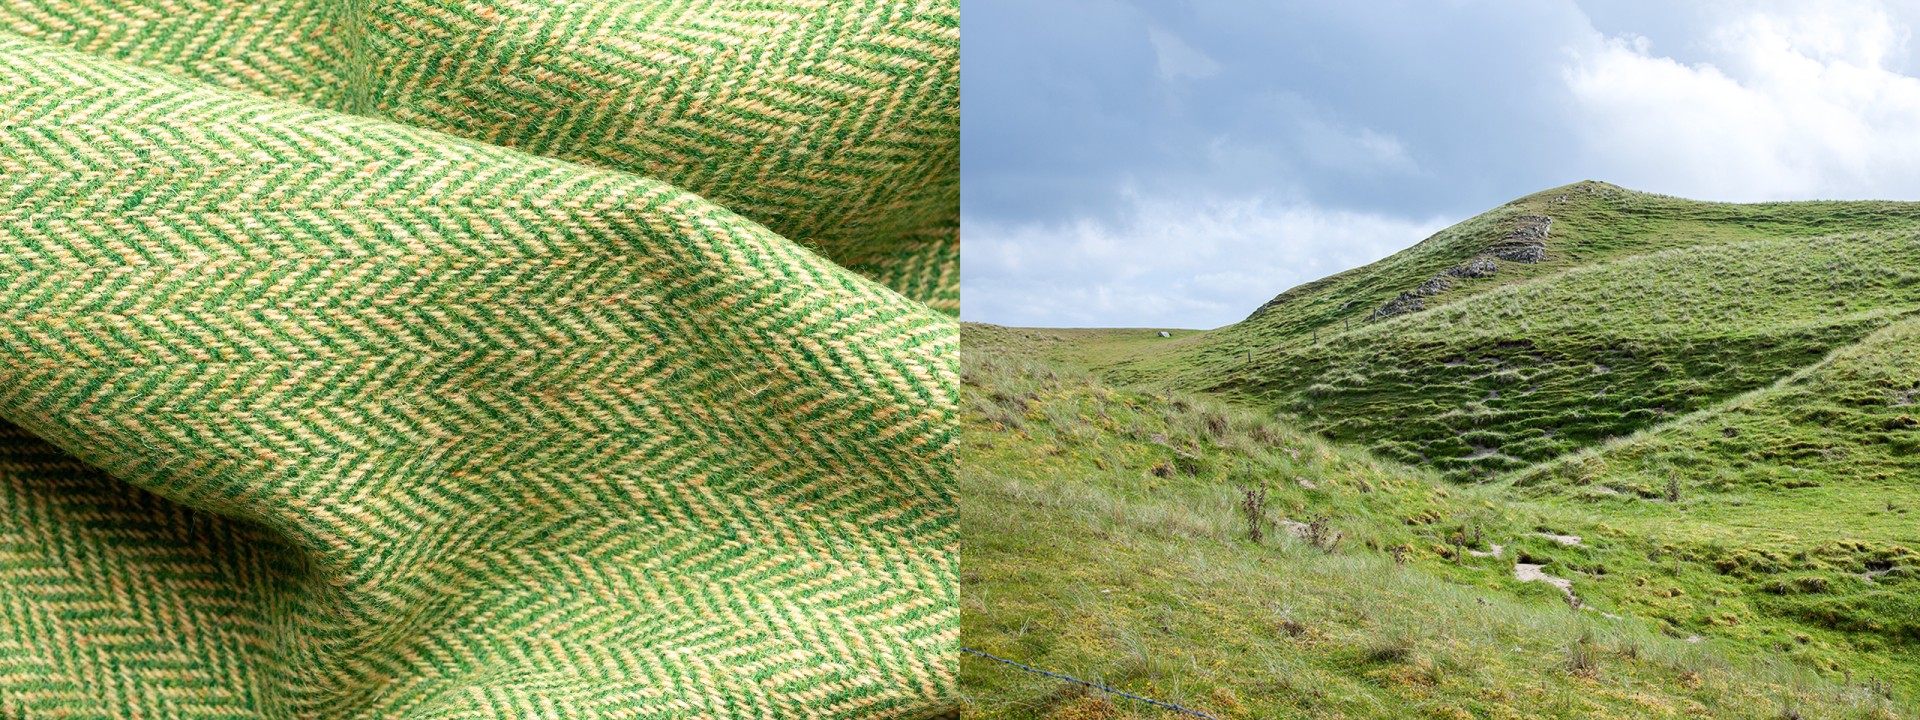 Harris tweed green contours zig-zag